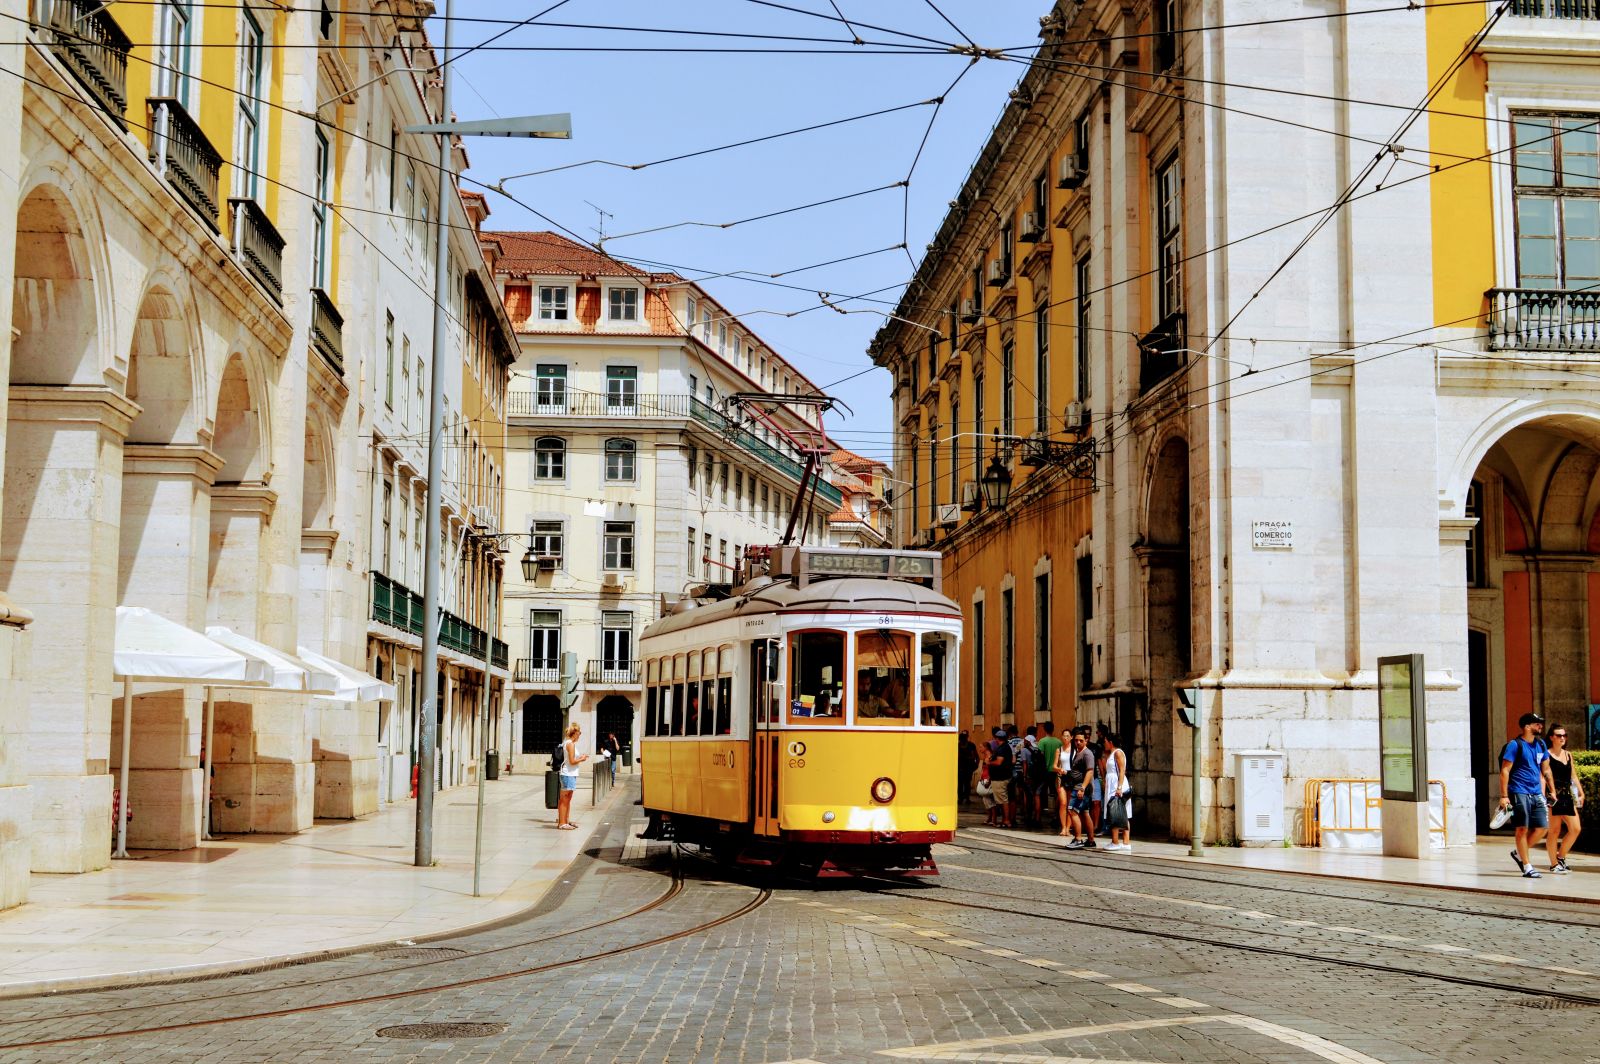 Public transport in Lisbon.